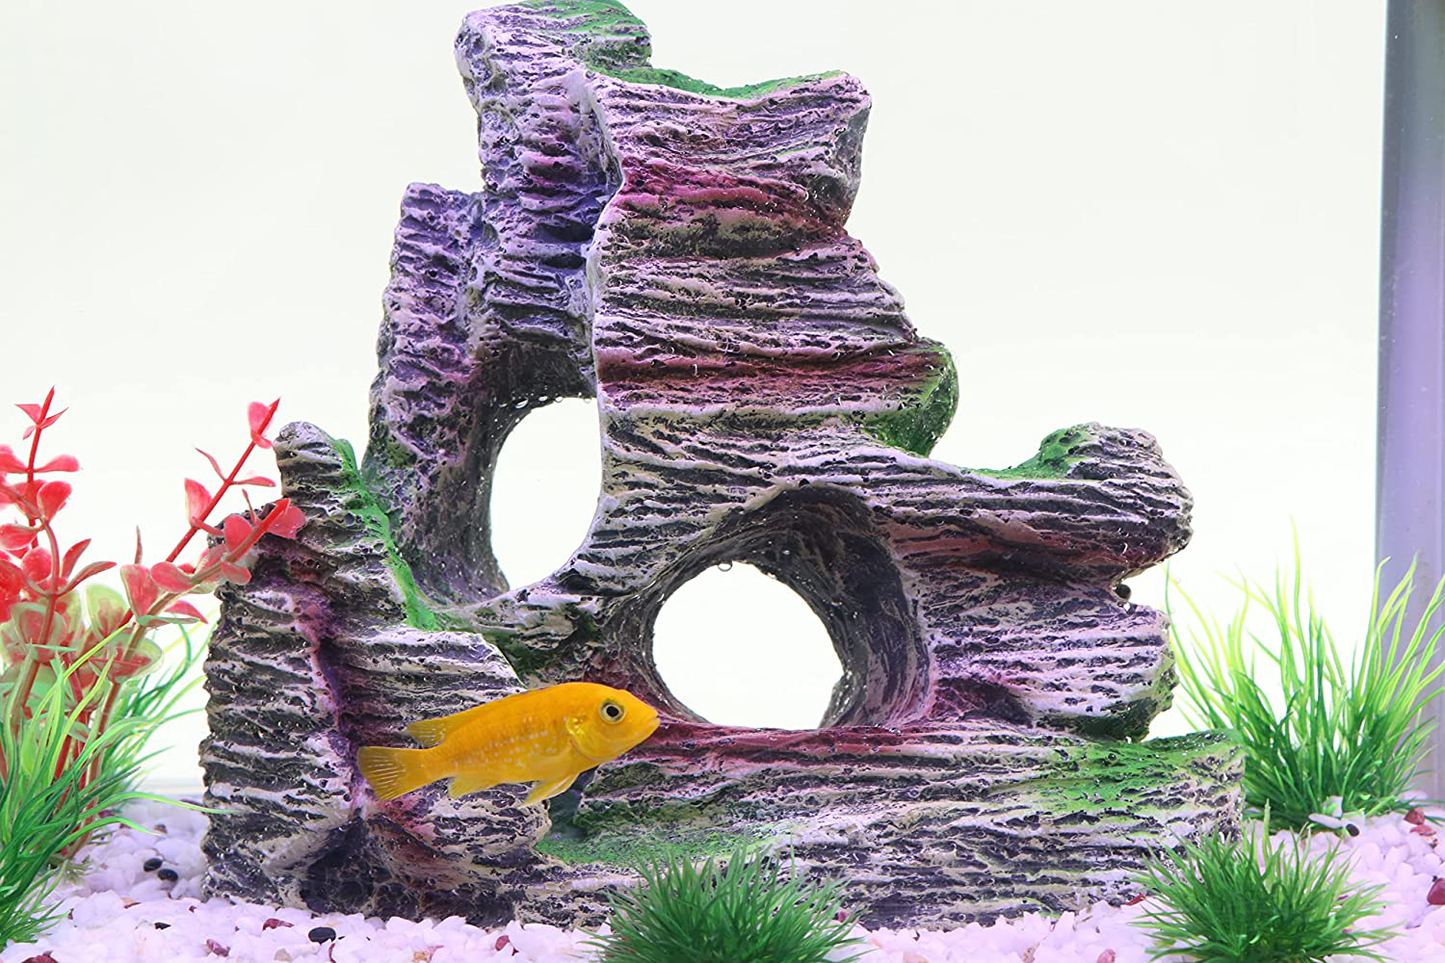 AQUA KT Aquarium Landscape Mountain View Cave Rock Decoration Fish Tank Ornament，Made of Resin Animals & Pet Supplies > Pet Supplies > Fish Supplies > Aquarium Decor AQUA KT   